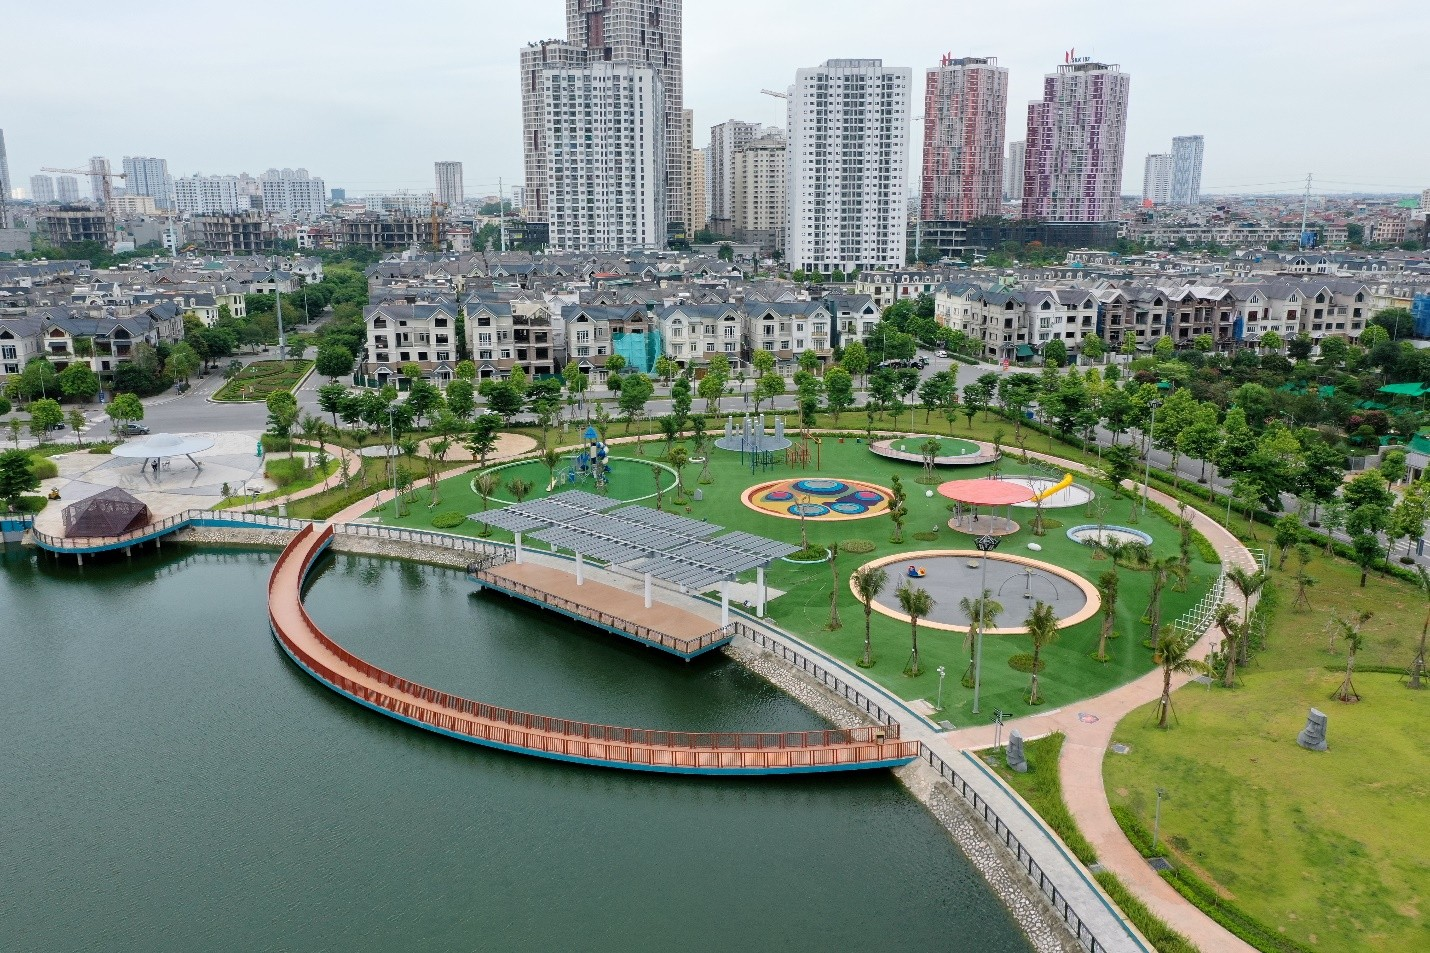 Cung, cầu đều lớn, những phân khúc bất động sản này dự báo sẽ phục hi mạnh sau dịch ở Hà Nội